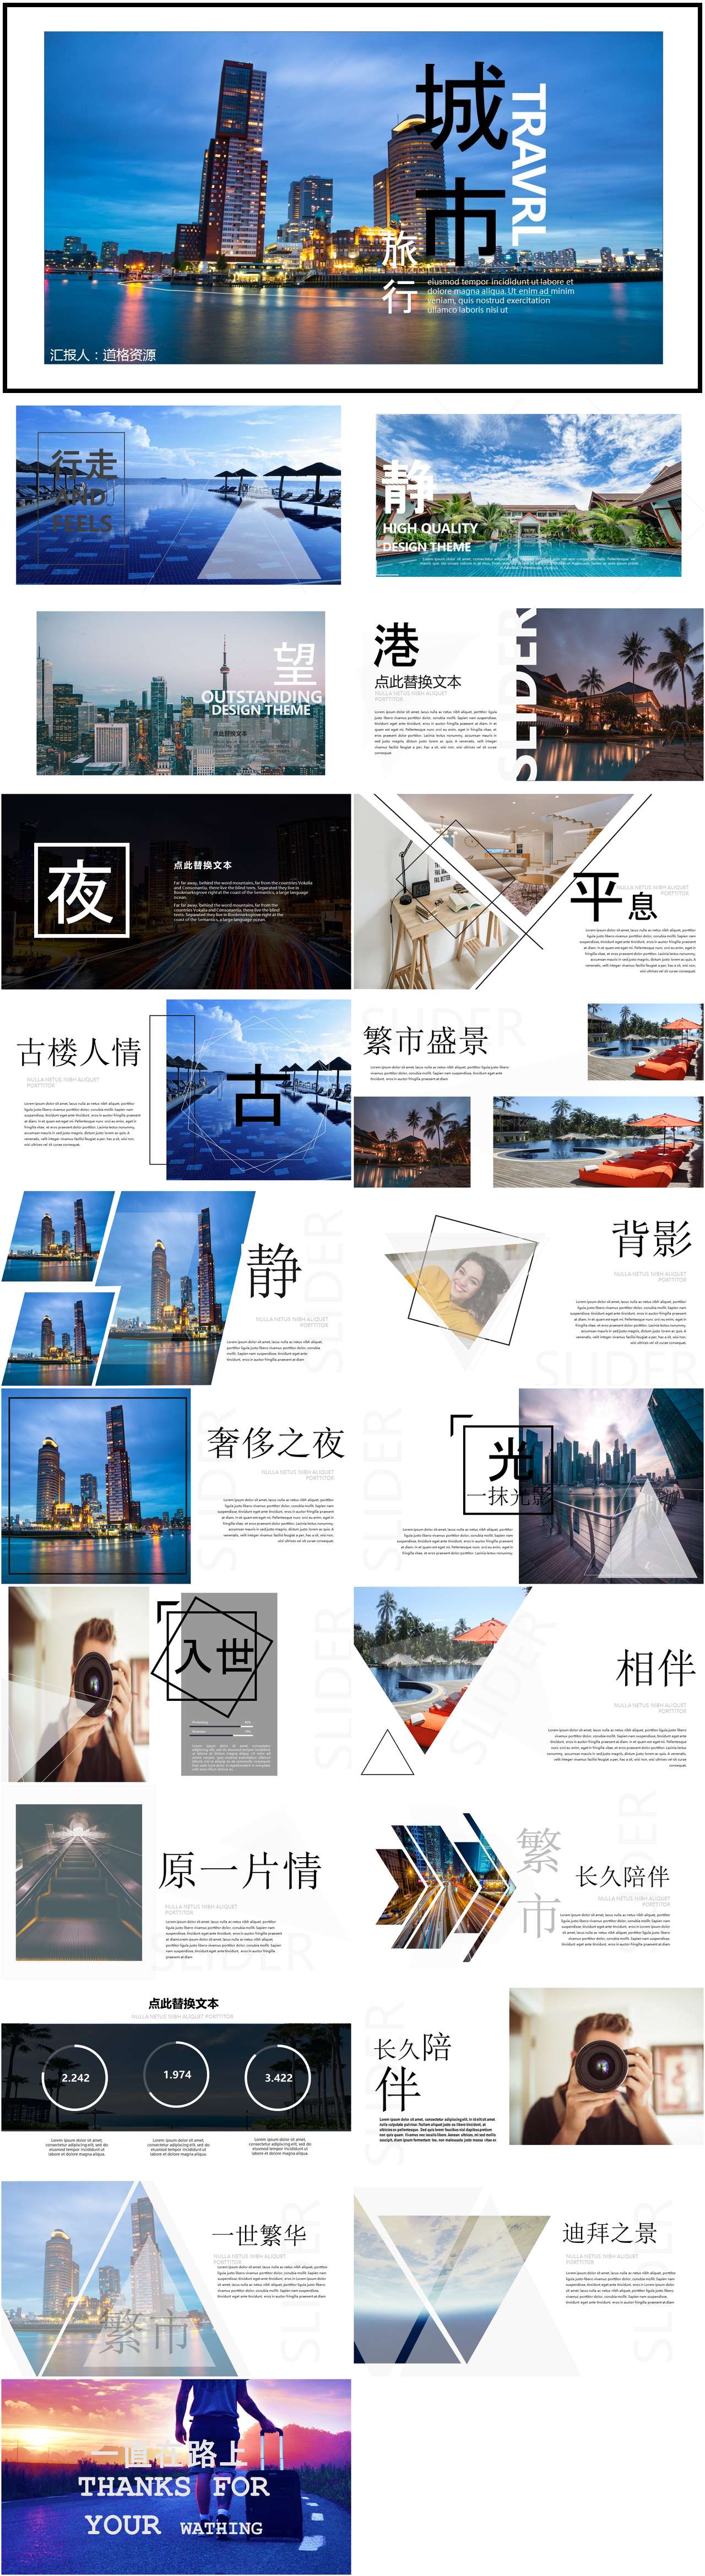 高端城市图片展示旅游相册企业宣传PPT模